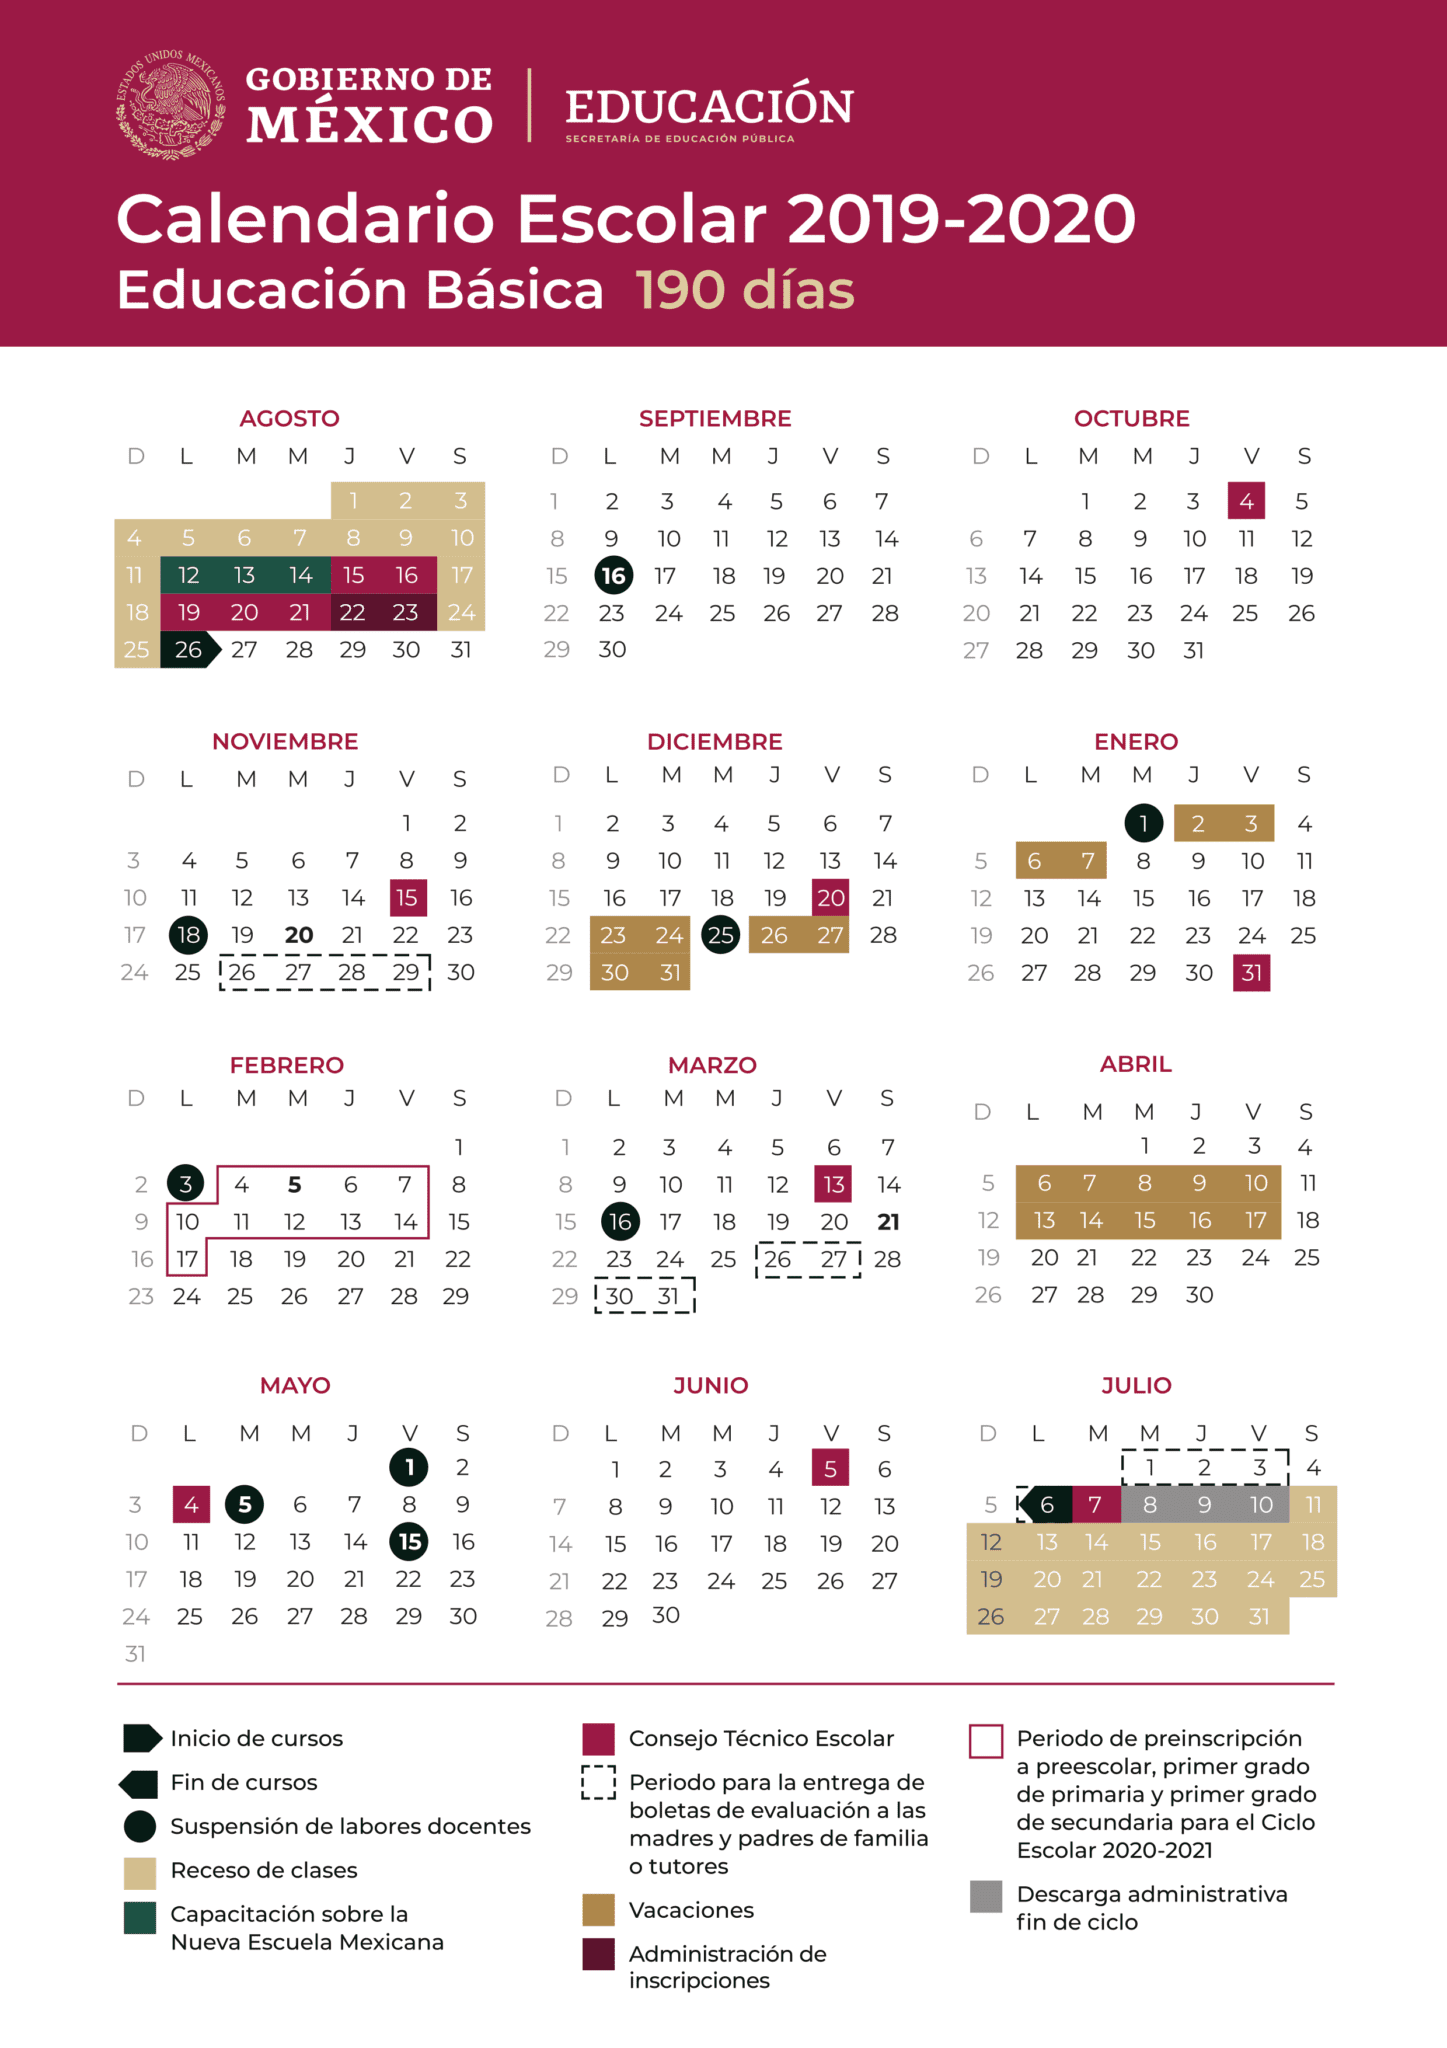 Calendario escolar mexico 2019-2020